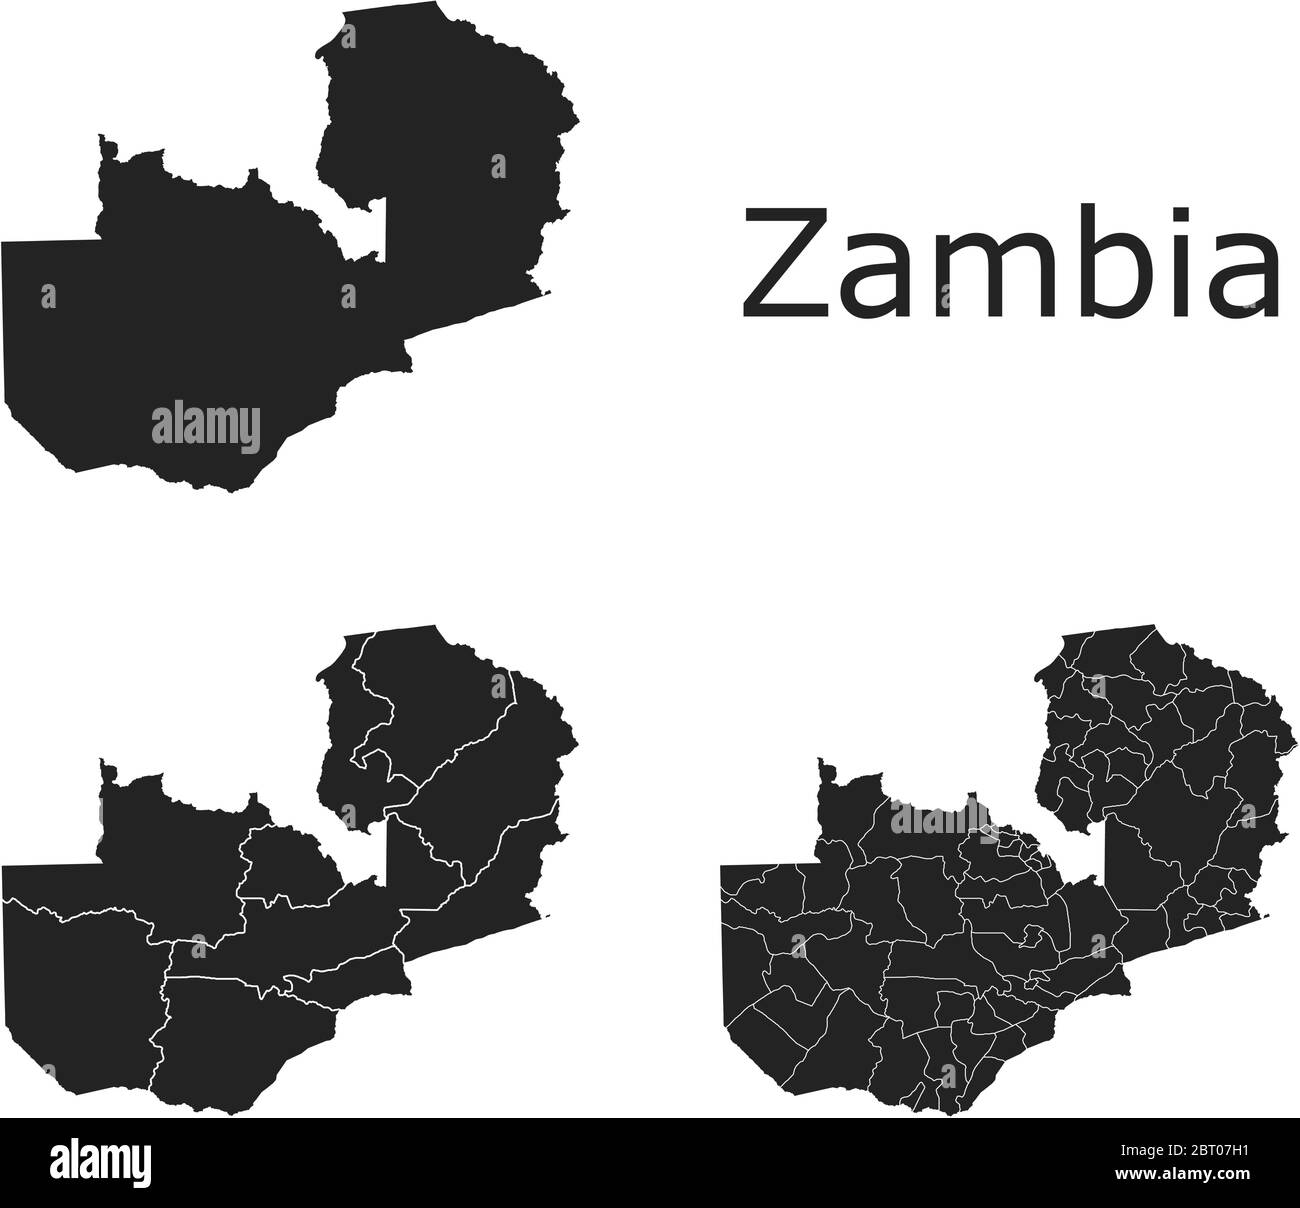 Cartes vectorielles de la Zambie avec régions administratives, municipalités, départements, frontières Illustration de Vecteur